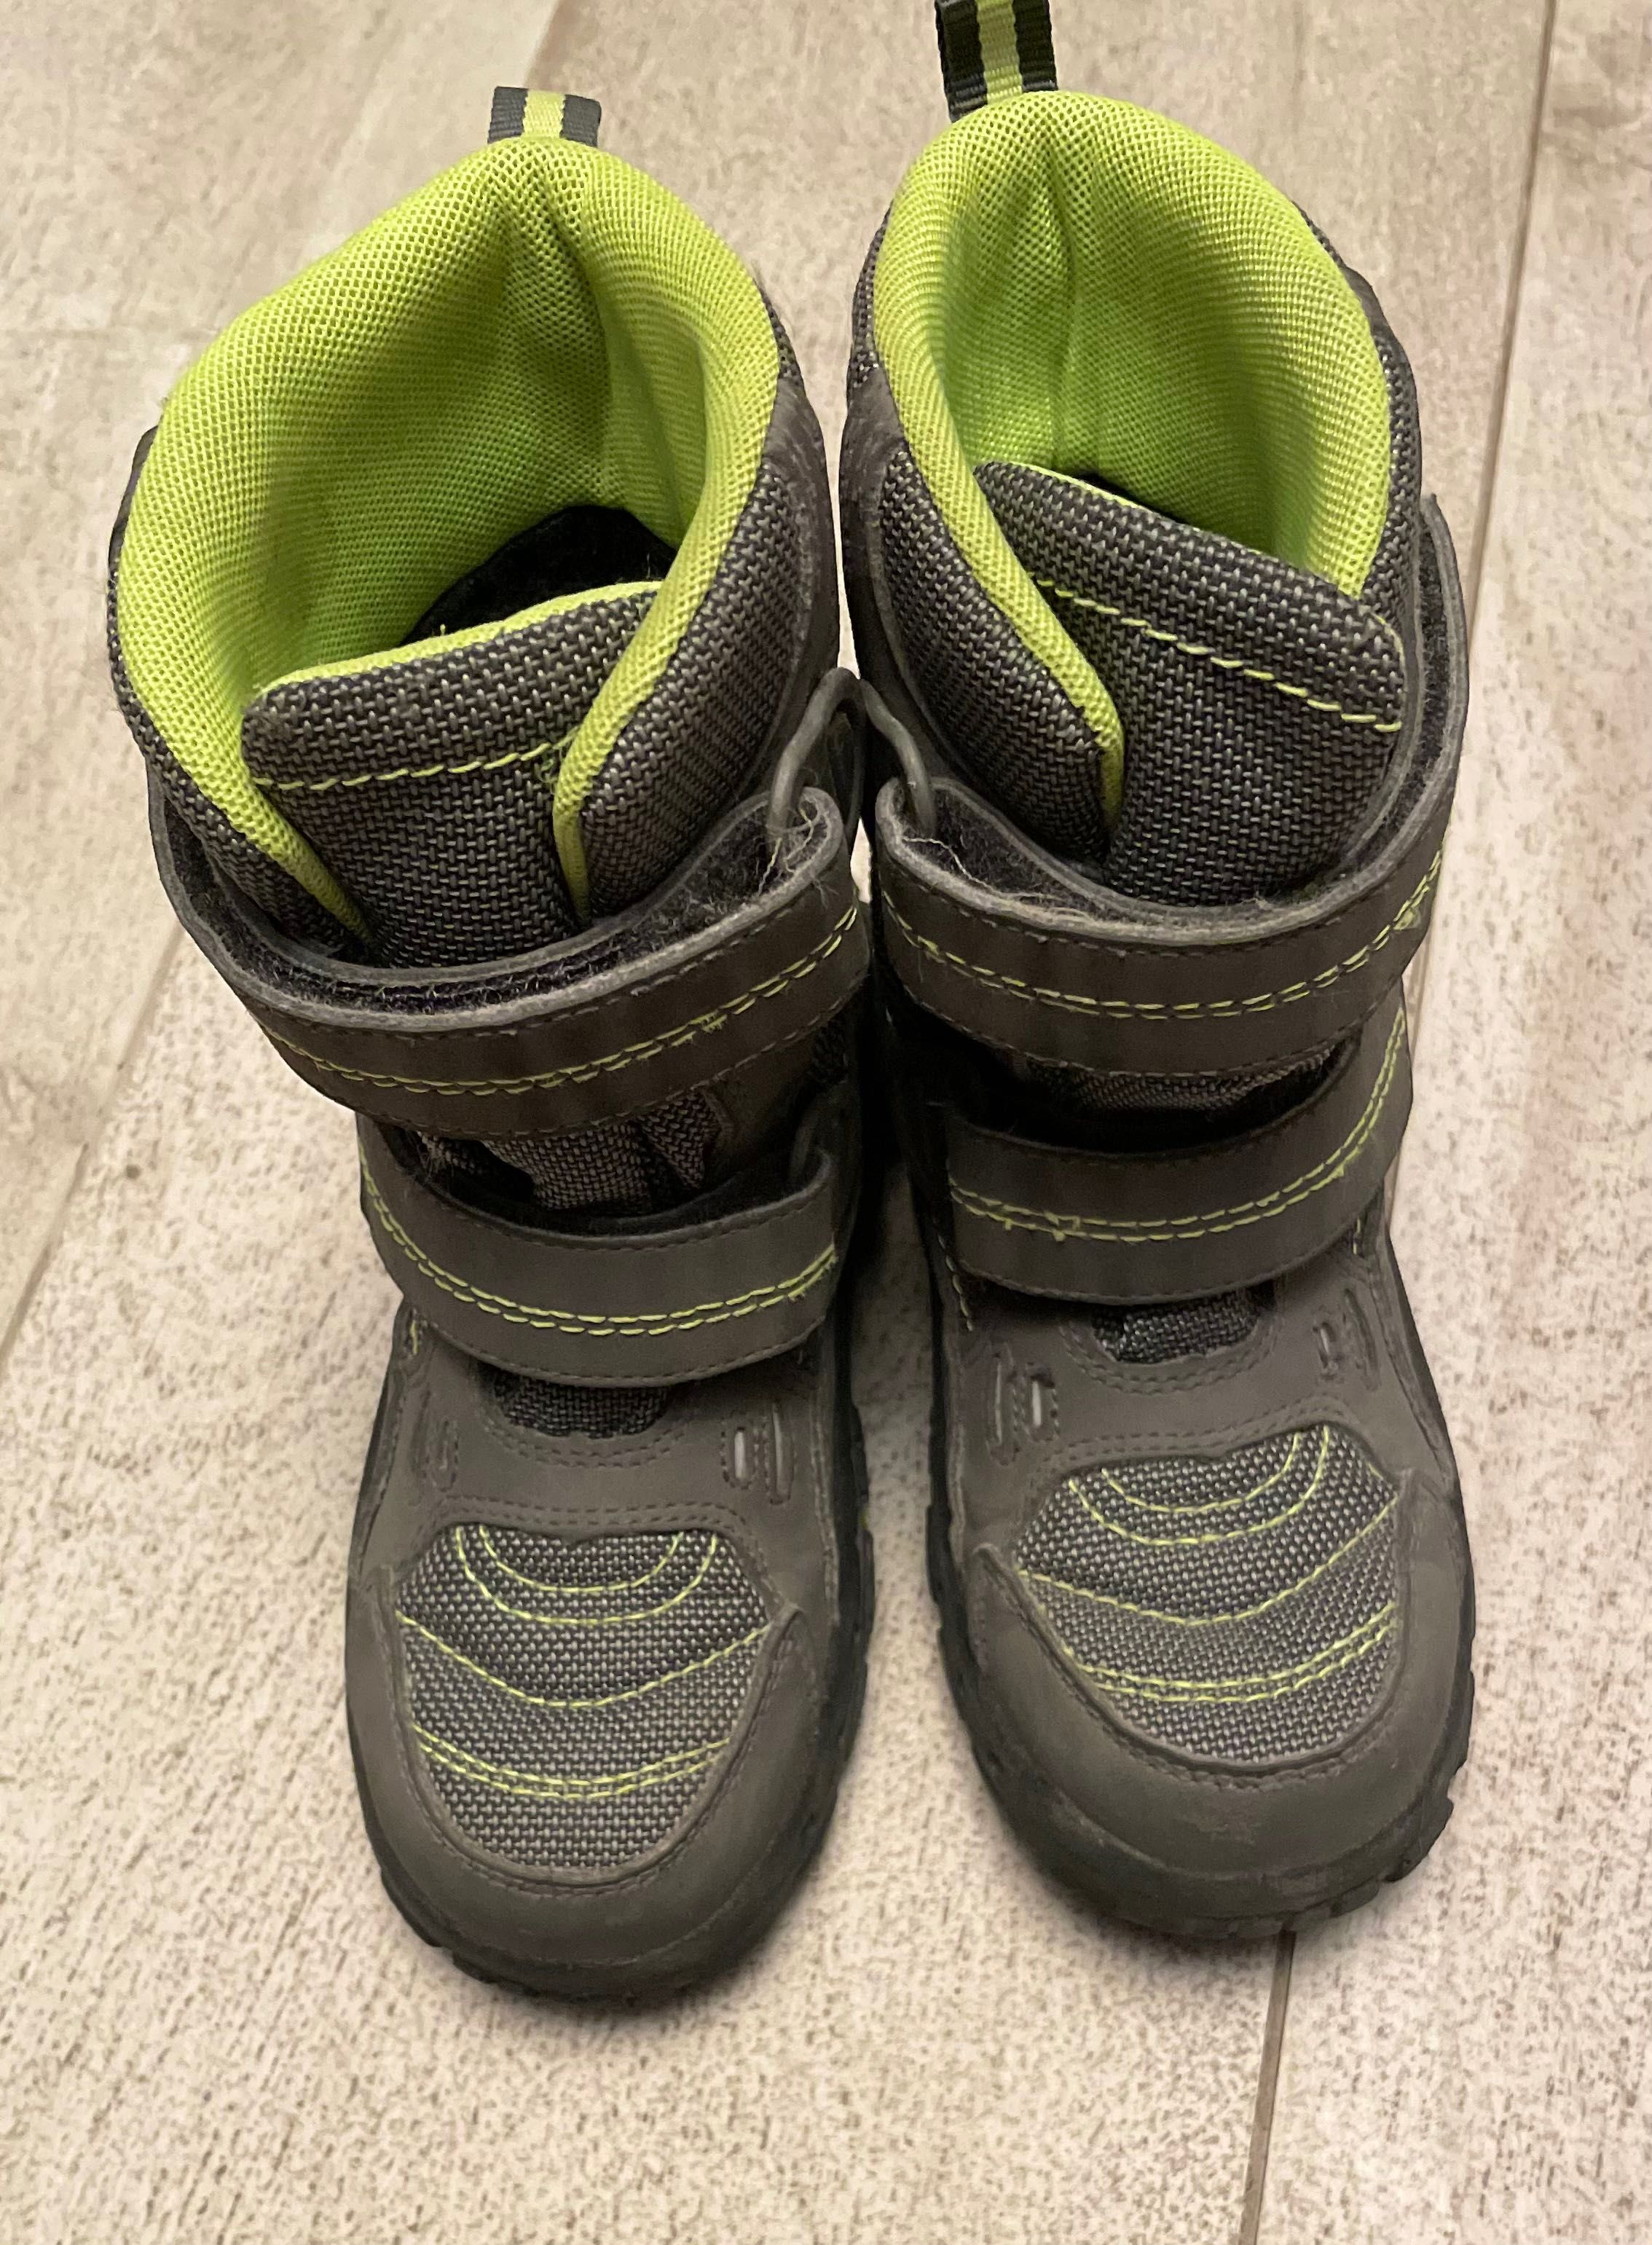 Зимові чоботи Термо Richter (Німеччина), черевики, ботинки розмір 26